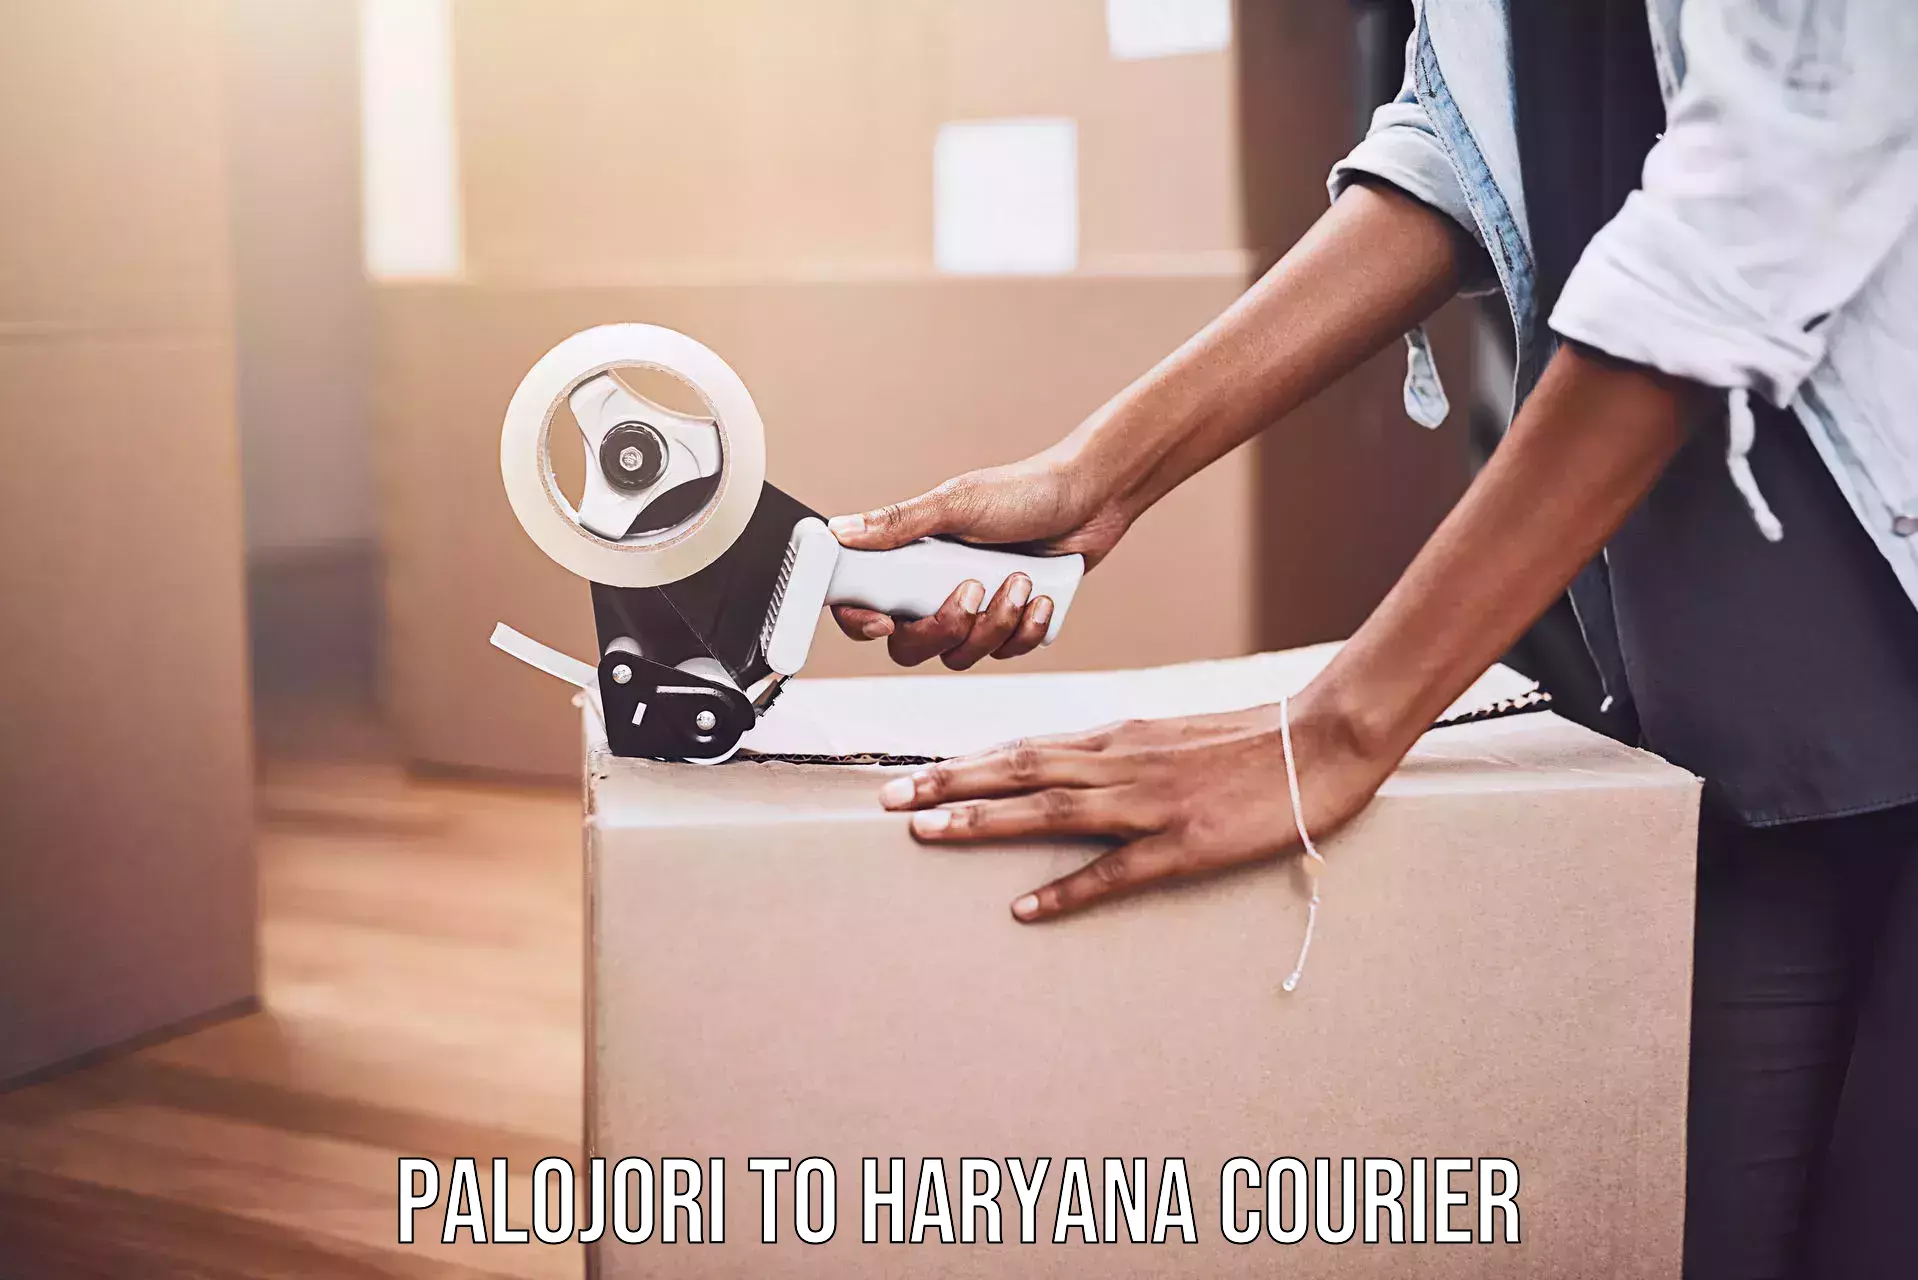 Courier service comparison in Palojori to Narwana